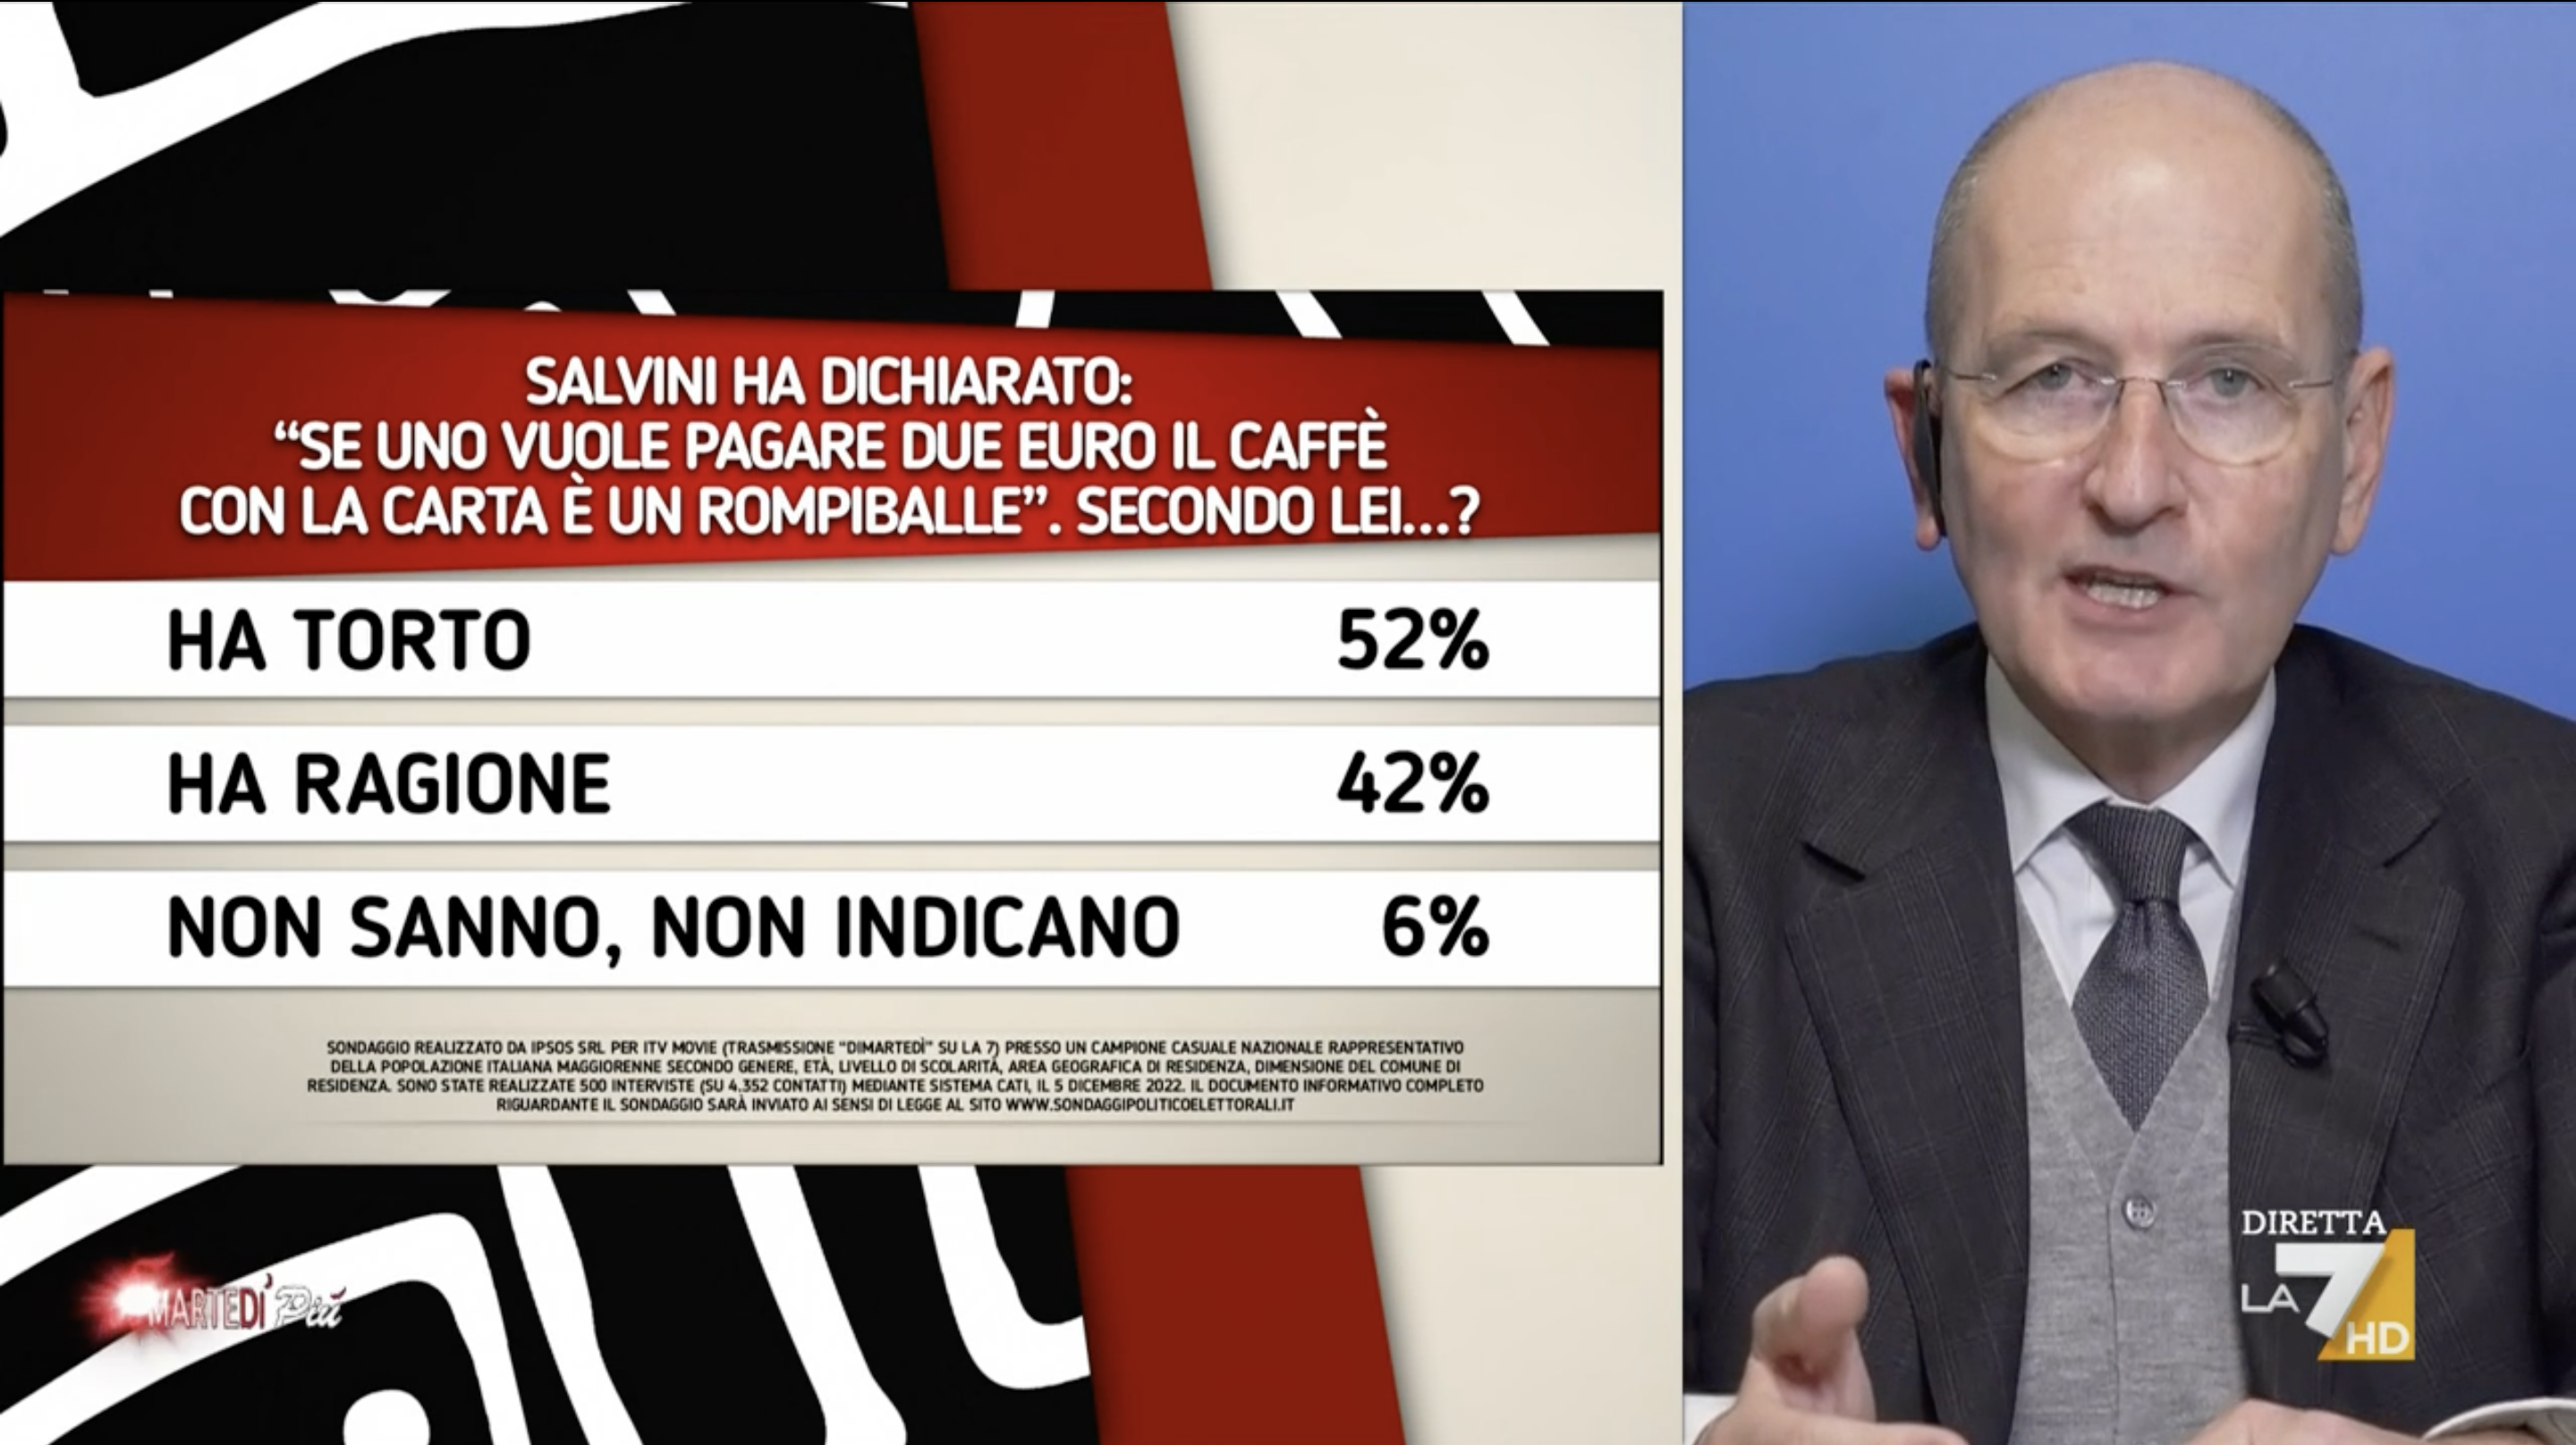 Sondaggi politici elettorali oggi 8 dicembre 2022: italiani divisi sulle dichiarazioni di Salvini sui “rompiballe” che vogliono pagare con il Pos